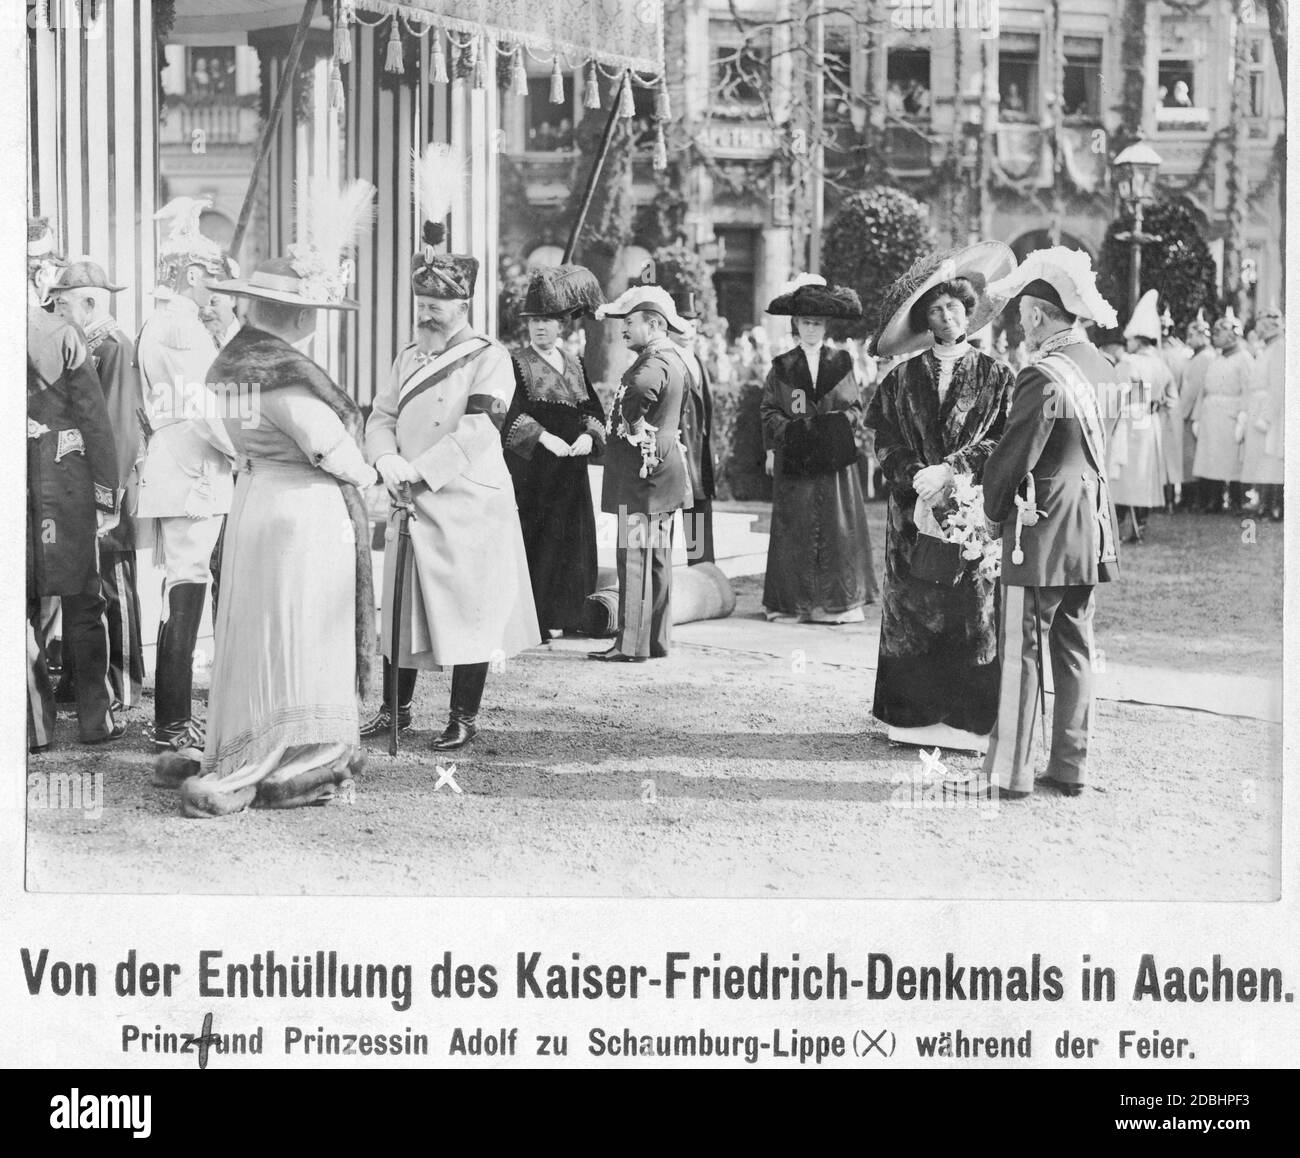 "Am 18. Oktober 1911 wurde das Kaiser-Friedrich-Denkmal auf dem Kaiserplatz in Aachen enthüllt. Unter den Anwesenden war Fürst Adolf von Schaumburg-Lippe (links, mit dem Großkreuz des Württembergischen Kronordens, einer Schärpe und einem Säbel angelehnt) in seiner Uniform des Husarenregiments "König Wilhelm I.". (1. Rheinisch) Nr. 7. Etwas weiter rechts befindet sich seine Frau Prinzessin Viktoria von Schaumburg-Lippe (geboren aus Preußen). Auf der linken Seite ist ein Kuirassier aus dem Regiment der Gardes du Corps in seiner weißen Parade Uniform mit Adlerhelm." Stockfoto